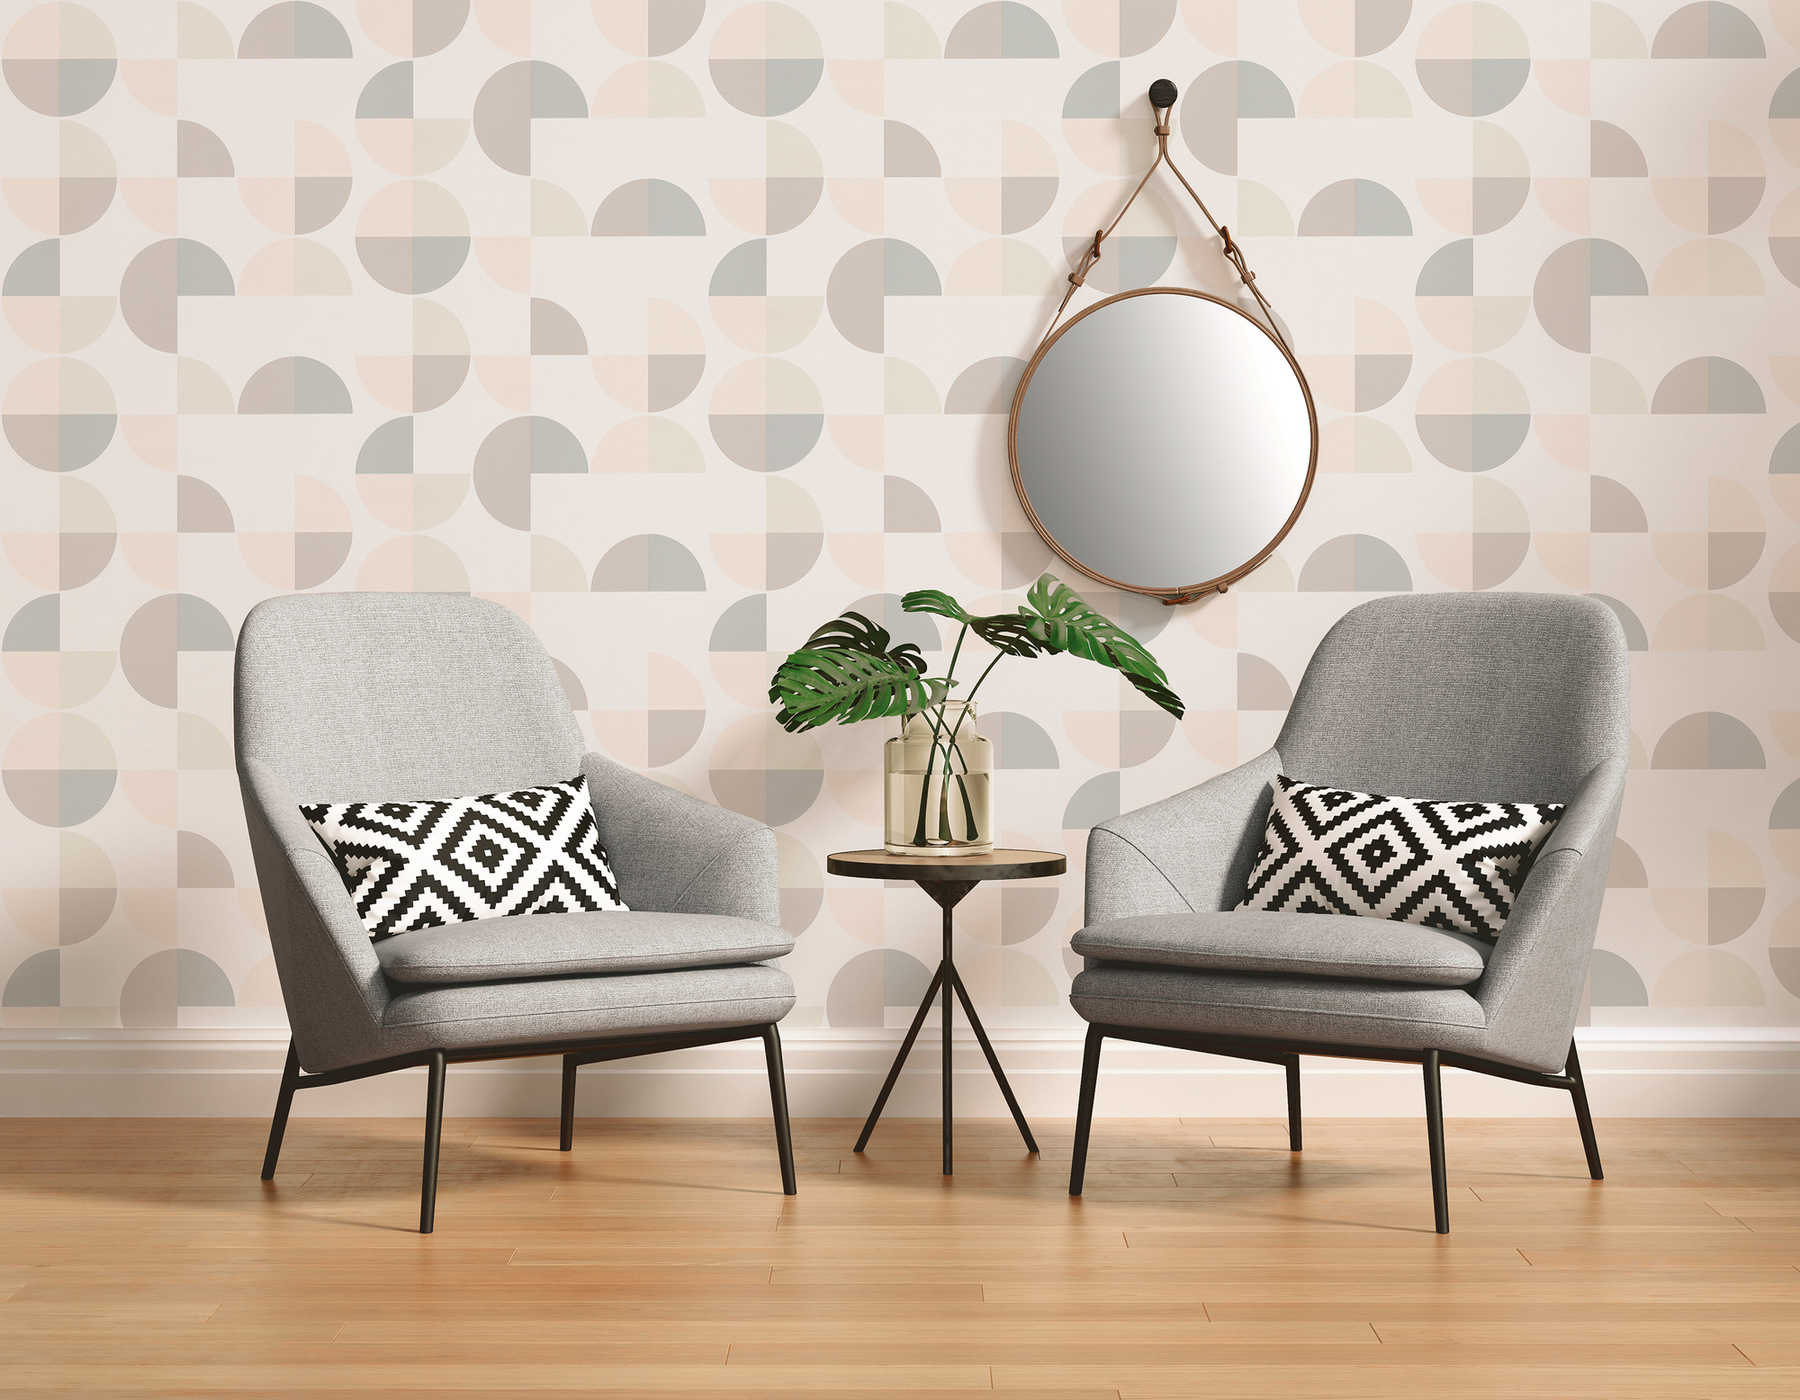             Geometrisch patroonbehang in Scandinavische stijl - grijs, roze, beige
        